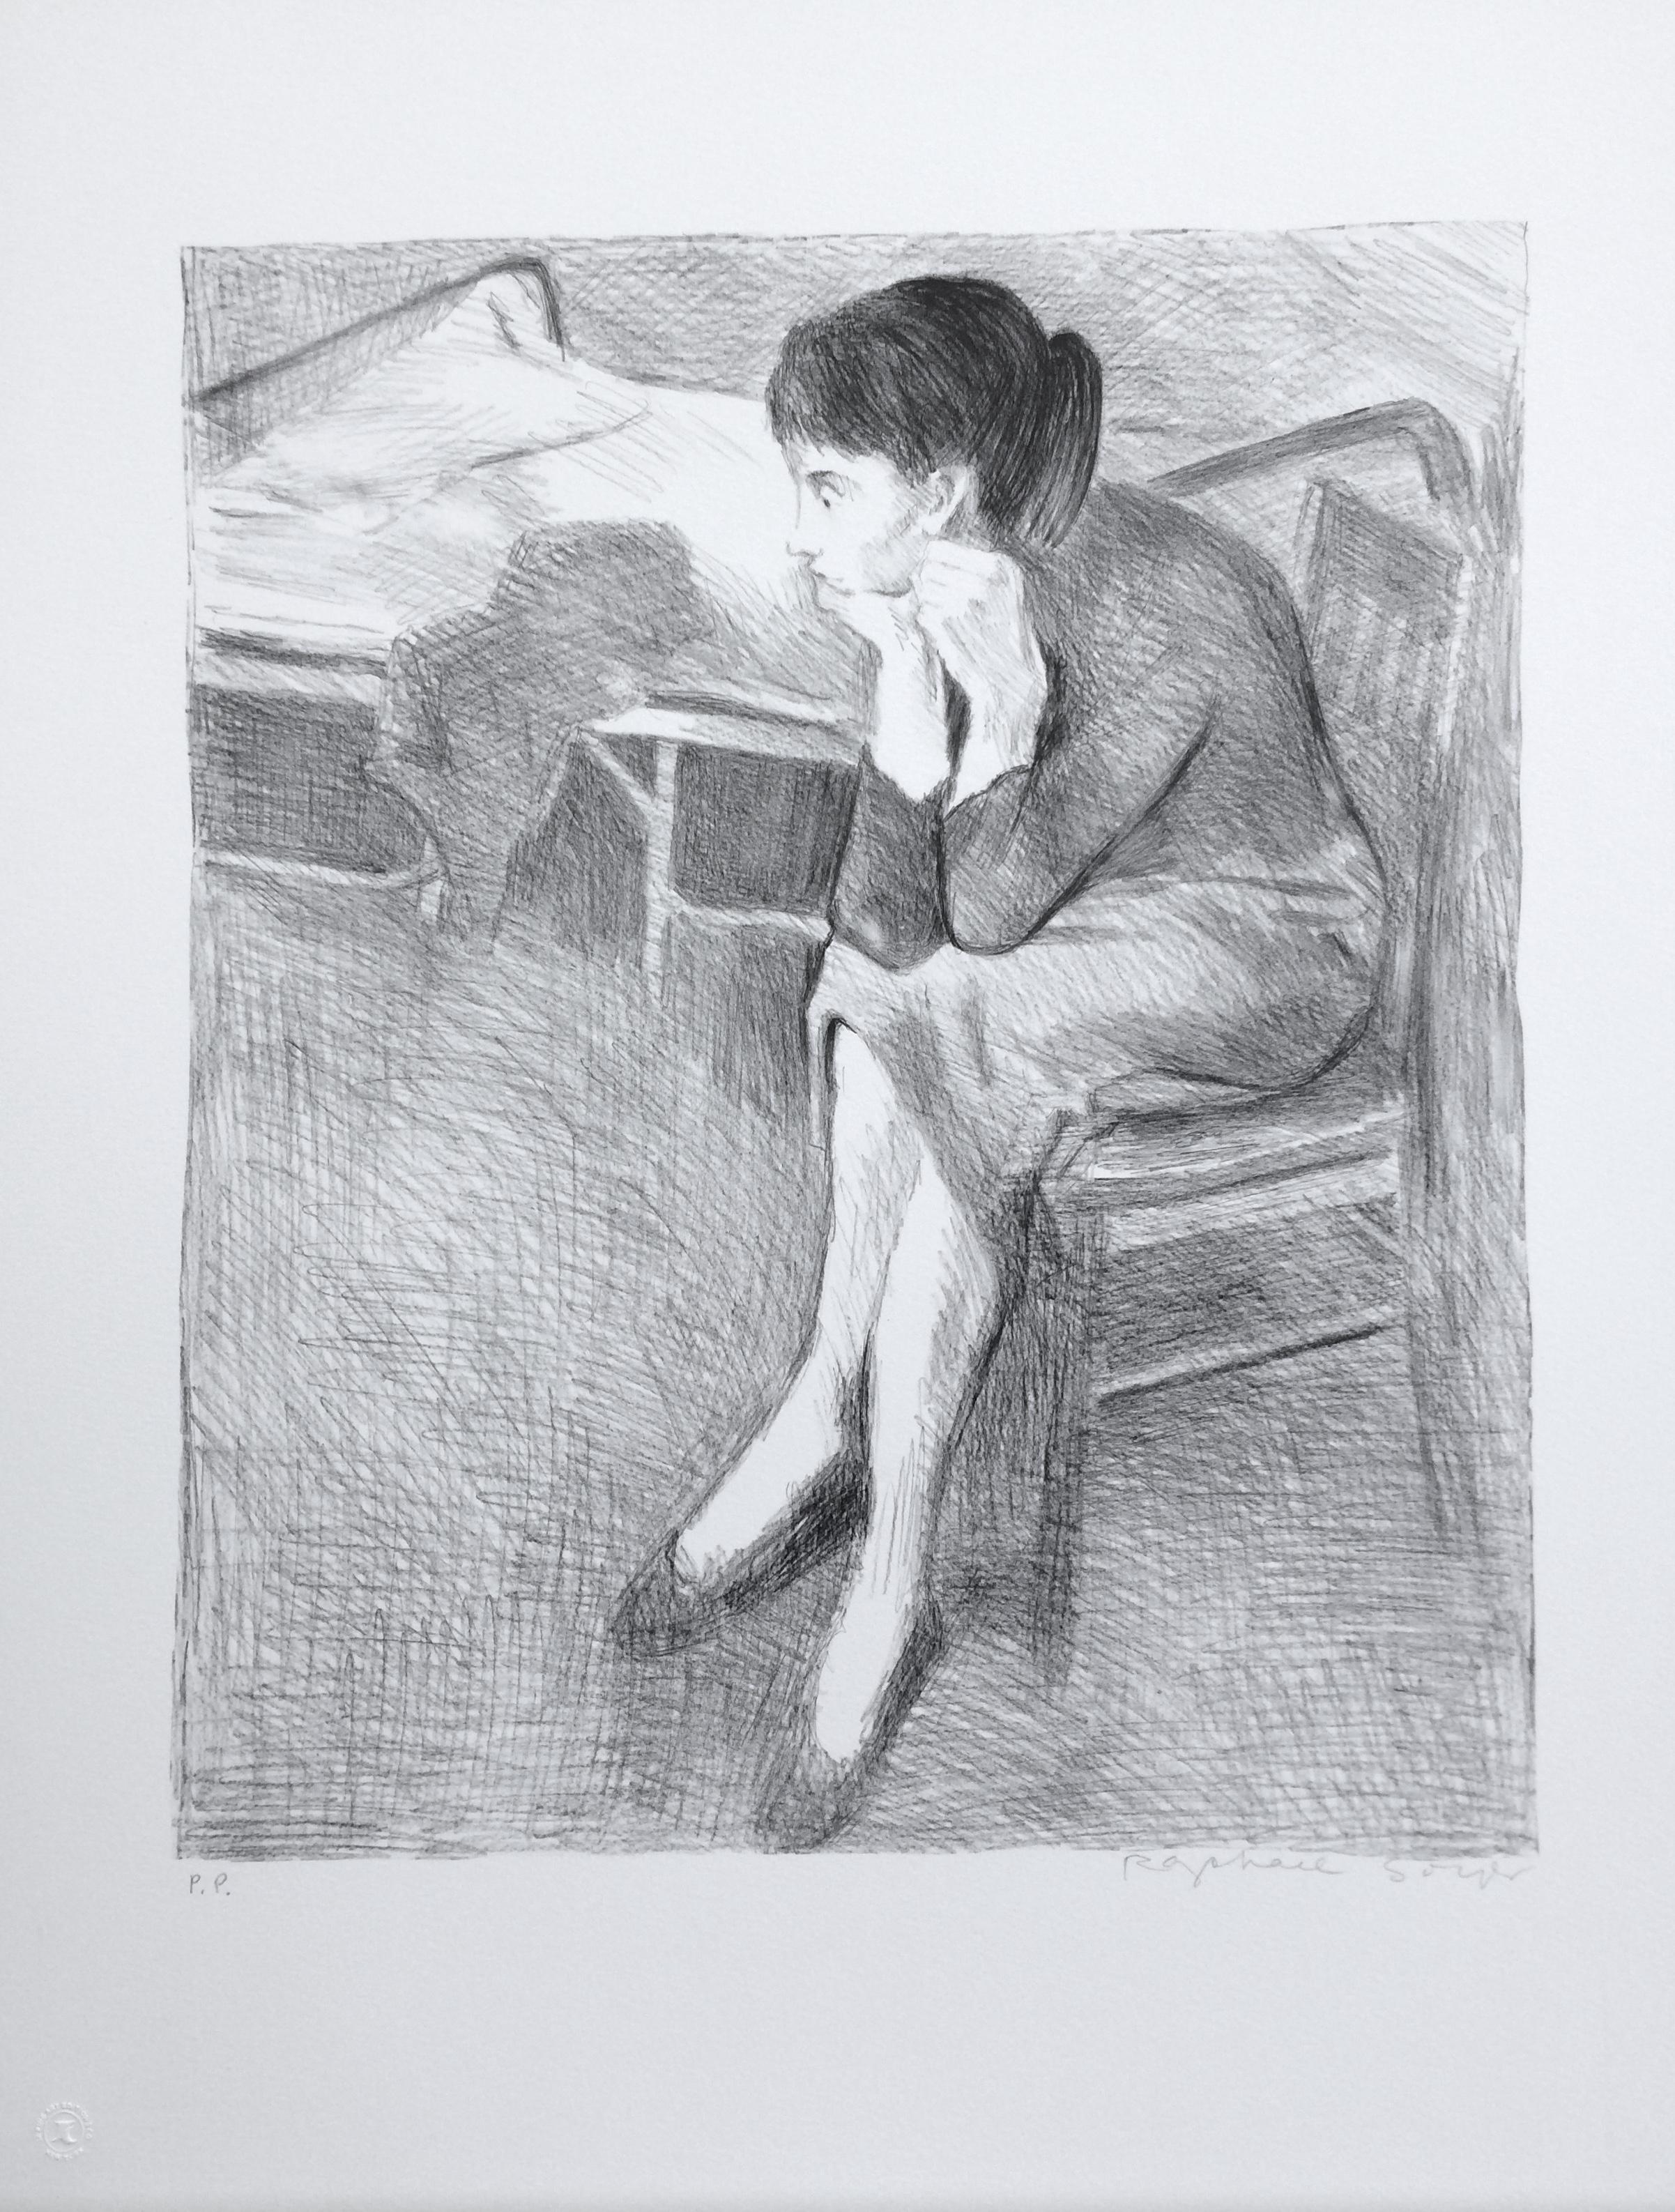 FEMME ASSISE PRÈS D'UN LIT est une lithographie originale dessinée à la main (non reproduite numériquement ou par photo) en édition limitée de l'artiste Raphael Soyer - Peintre russe/américain du réalisme social, 1899-1987. Imprimé à l'aide de